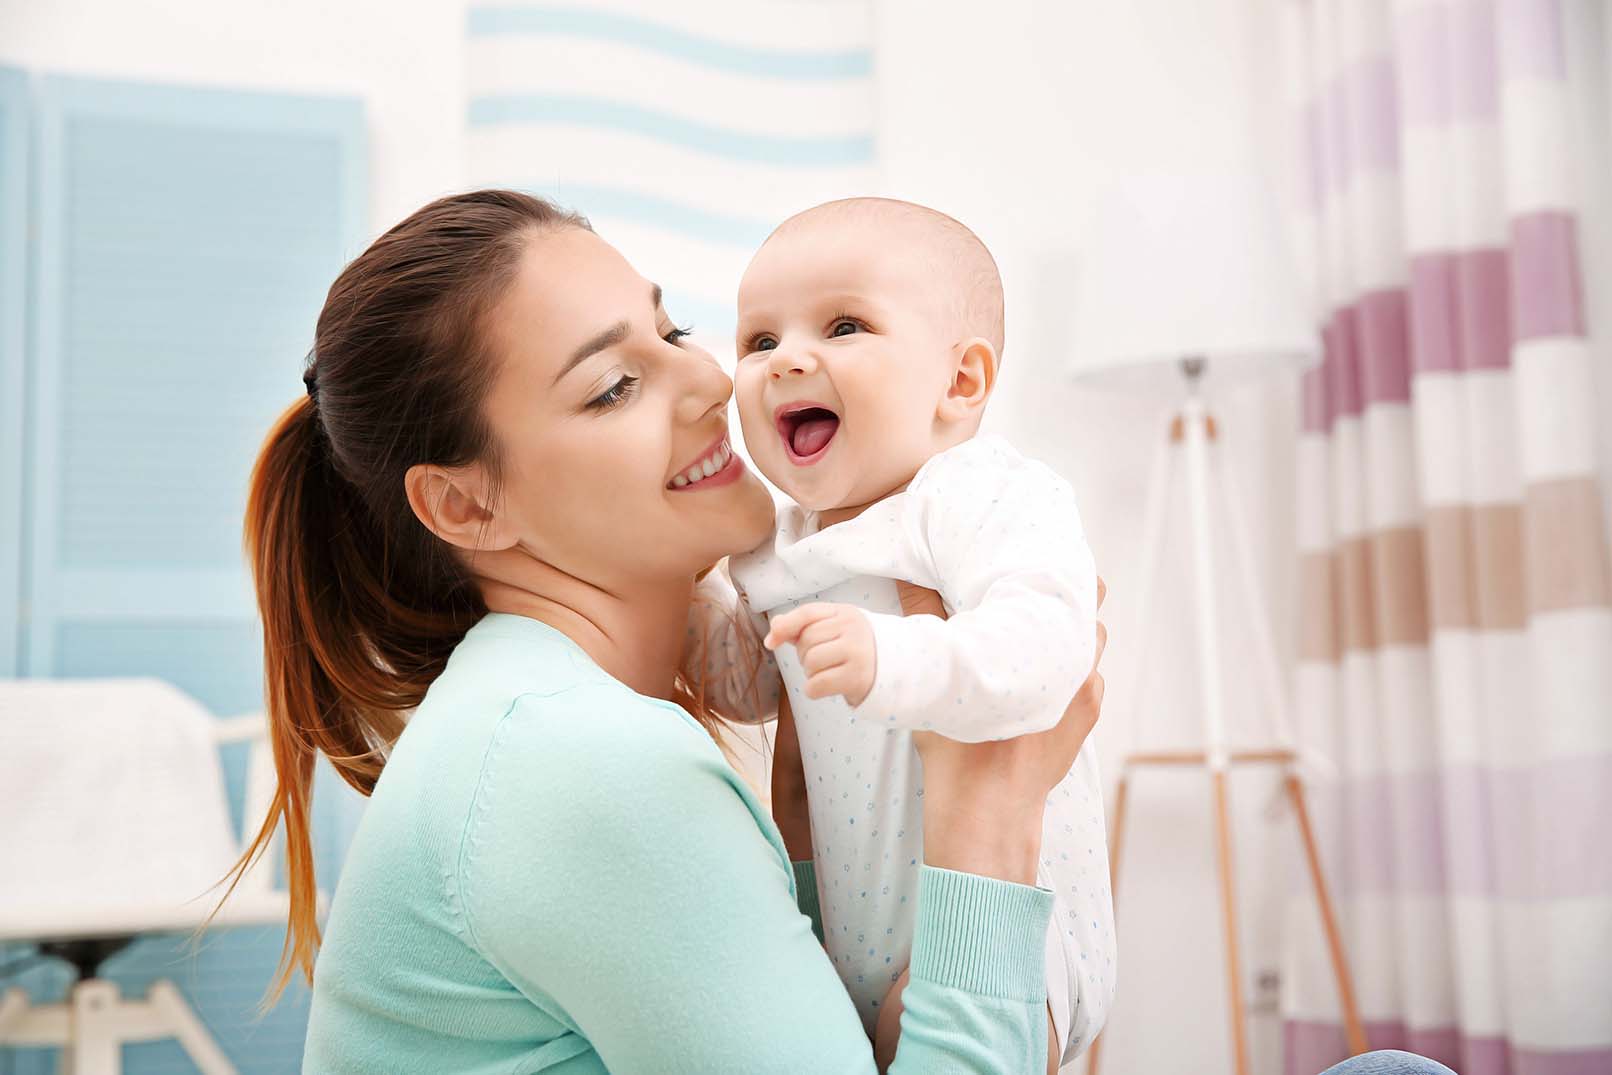 Mulher sorri para um bebê, segurando-o no colo.